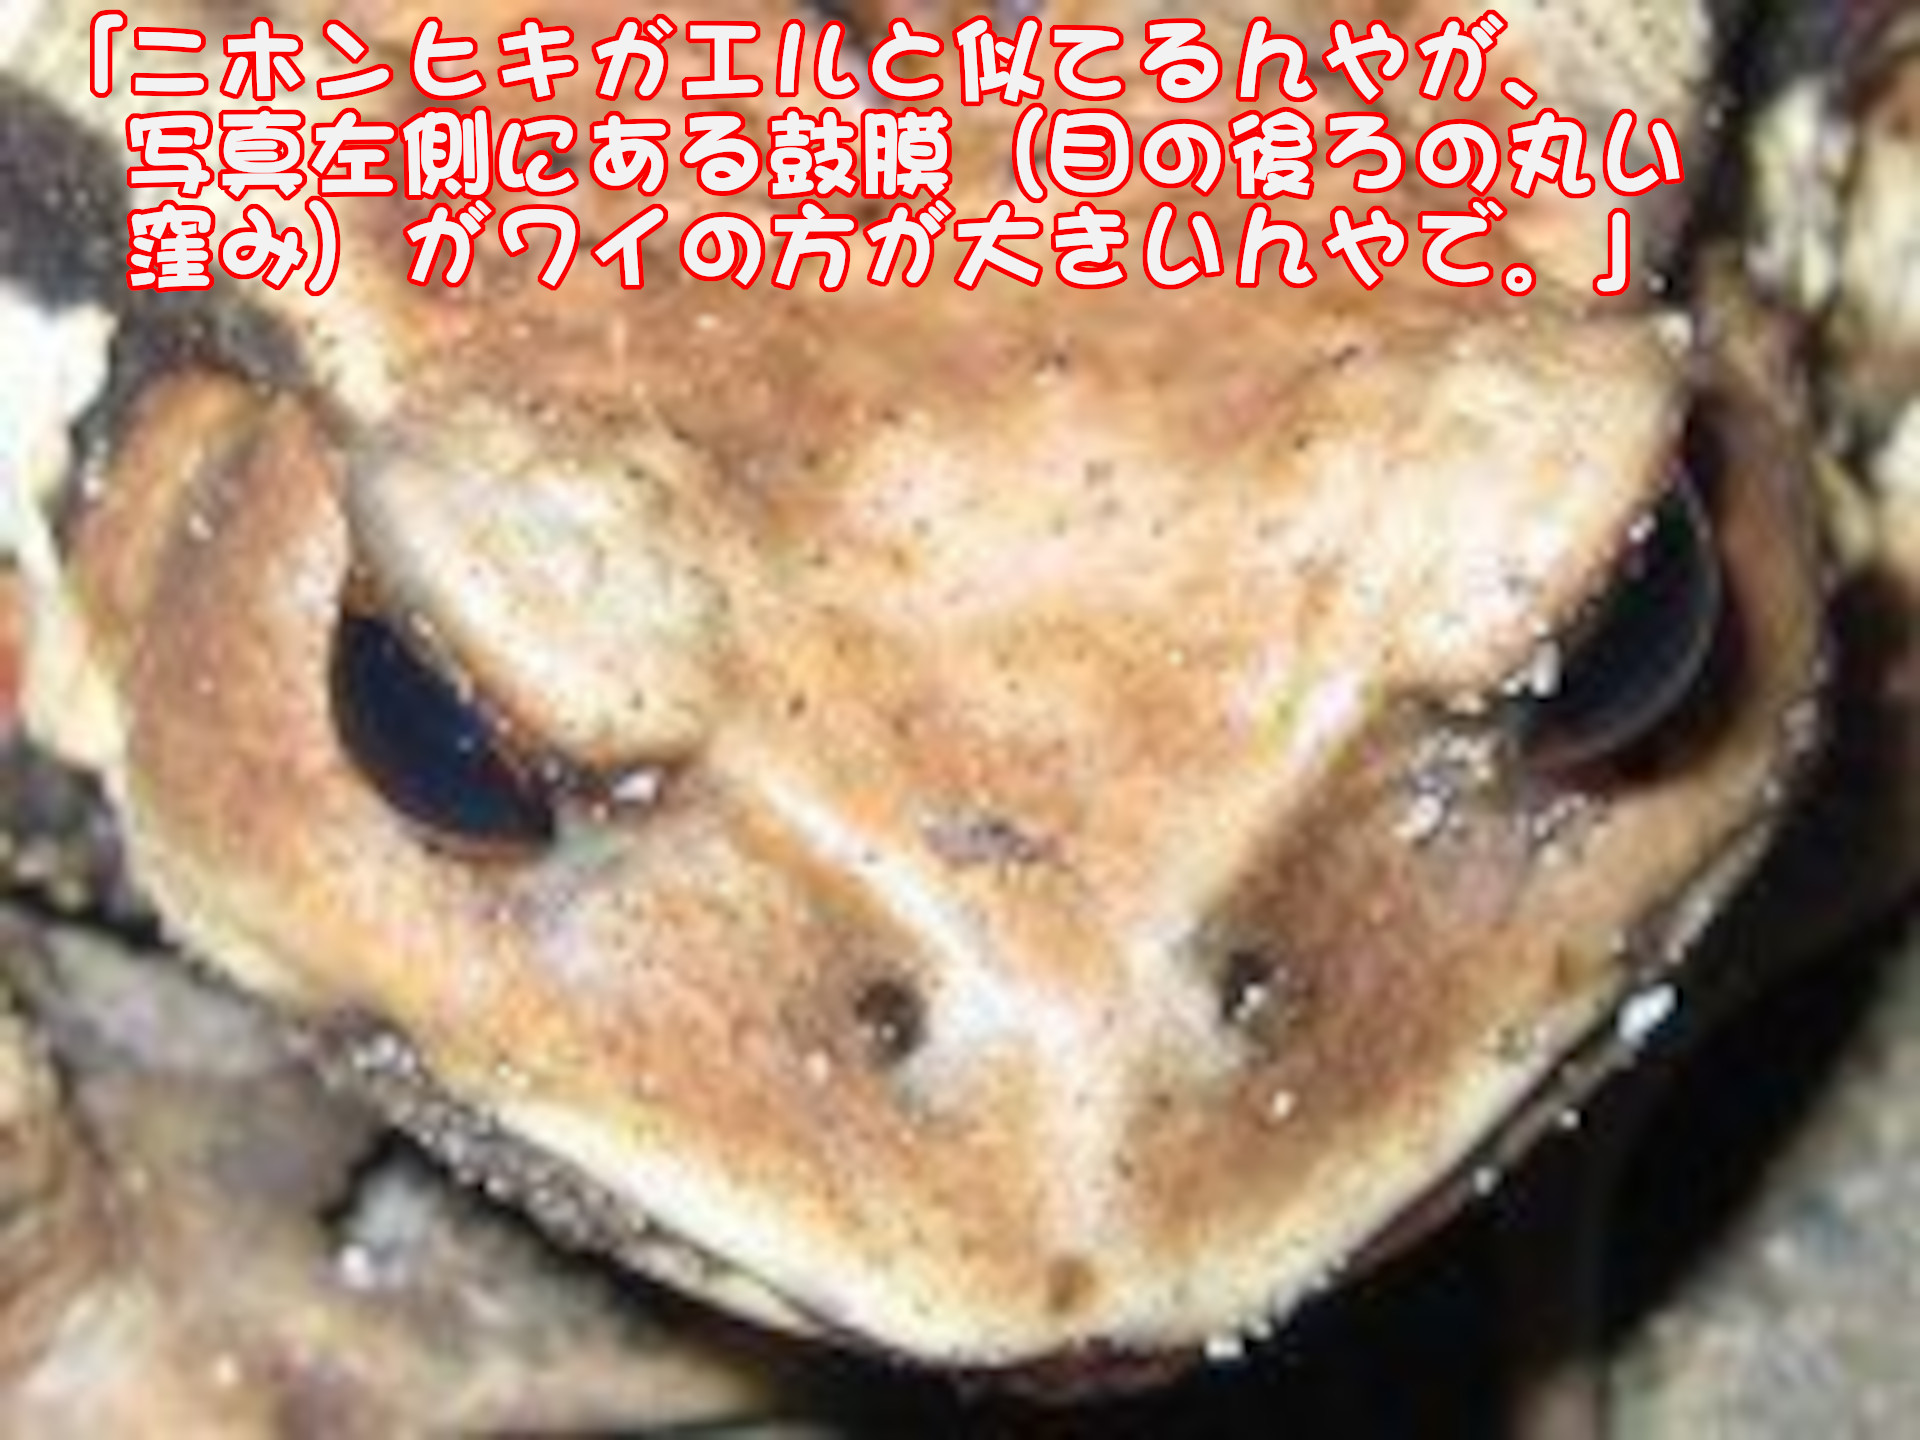 アズマヒキガメル
「ニホンヒキガエルと似てるんやが、写真左側にある鼓膜（目の後ろの丸い窪み）がワイの方が大きいんやで。」